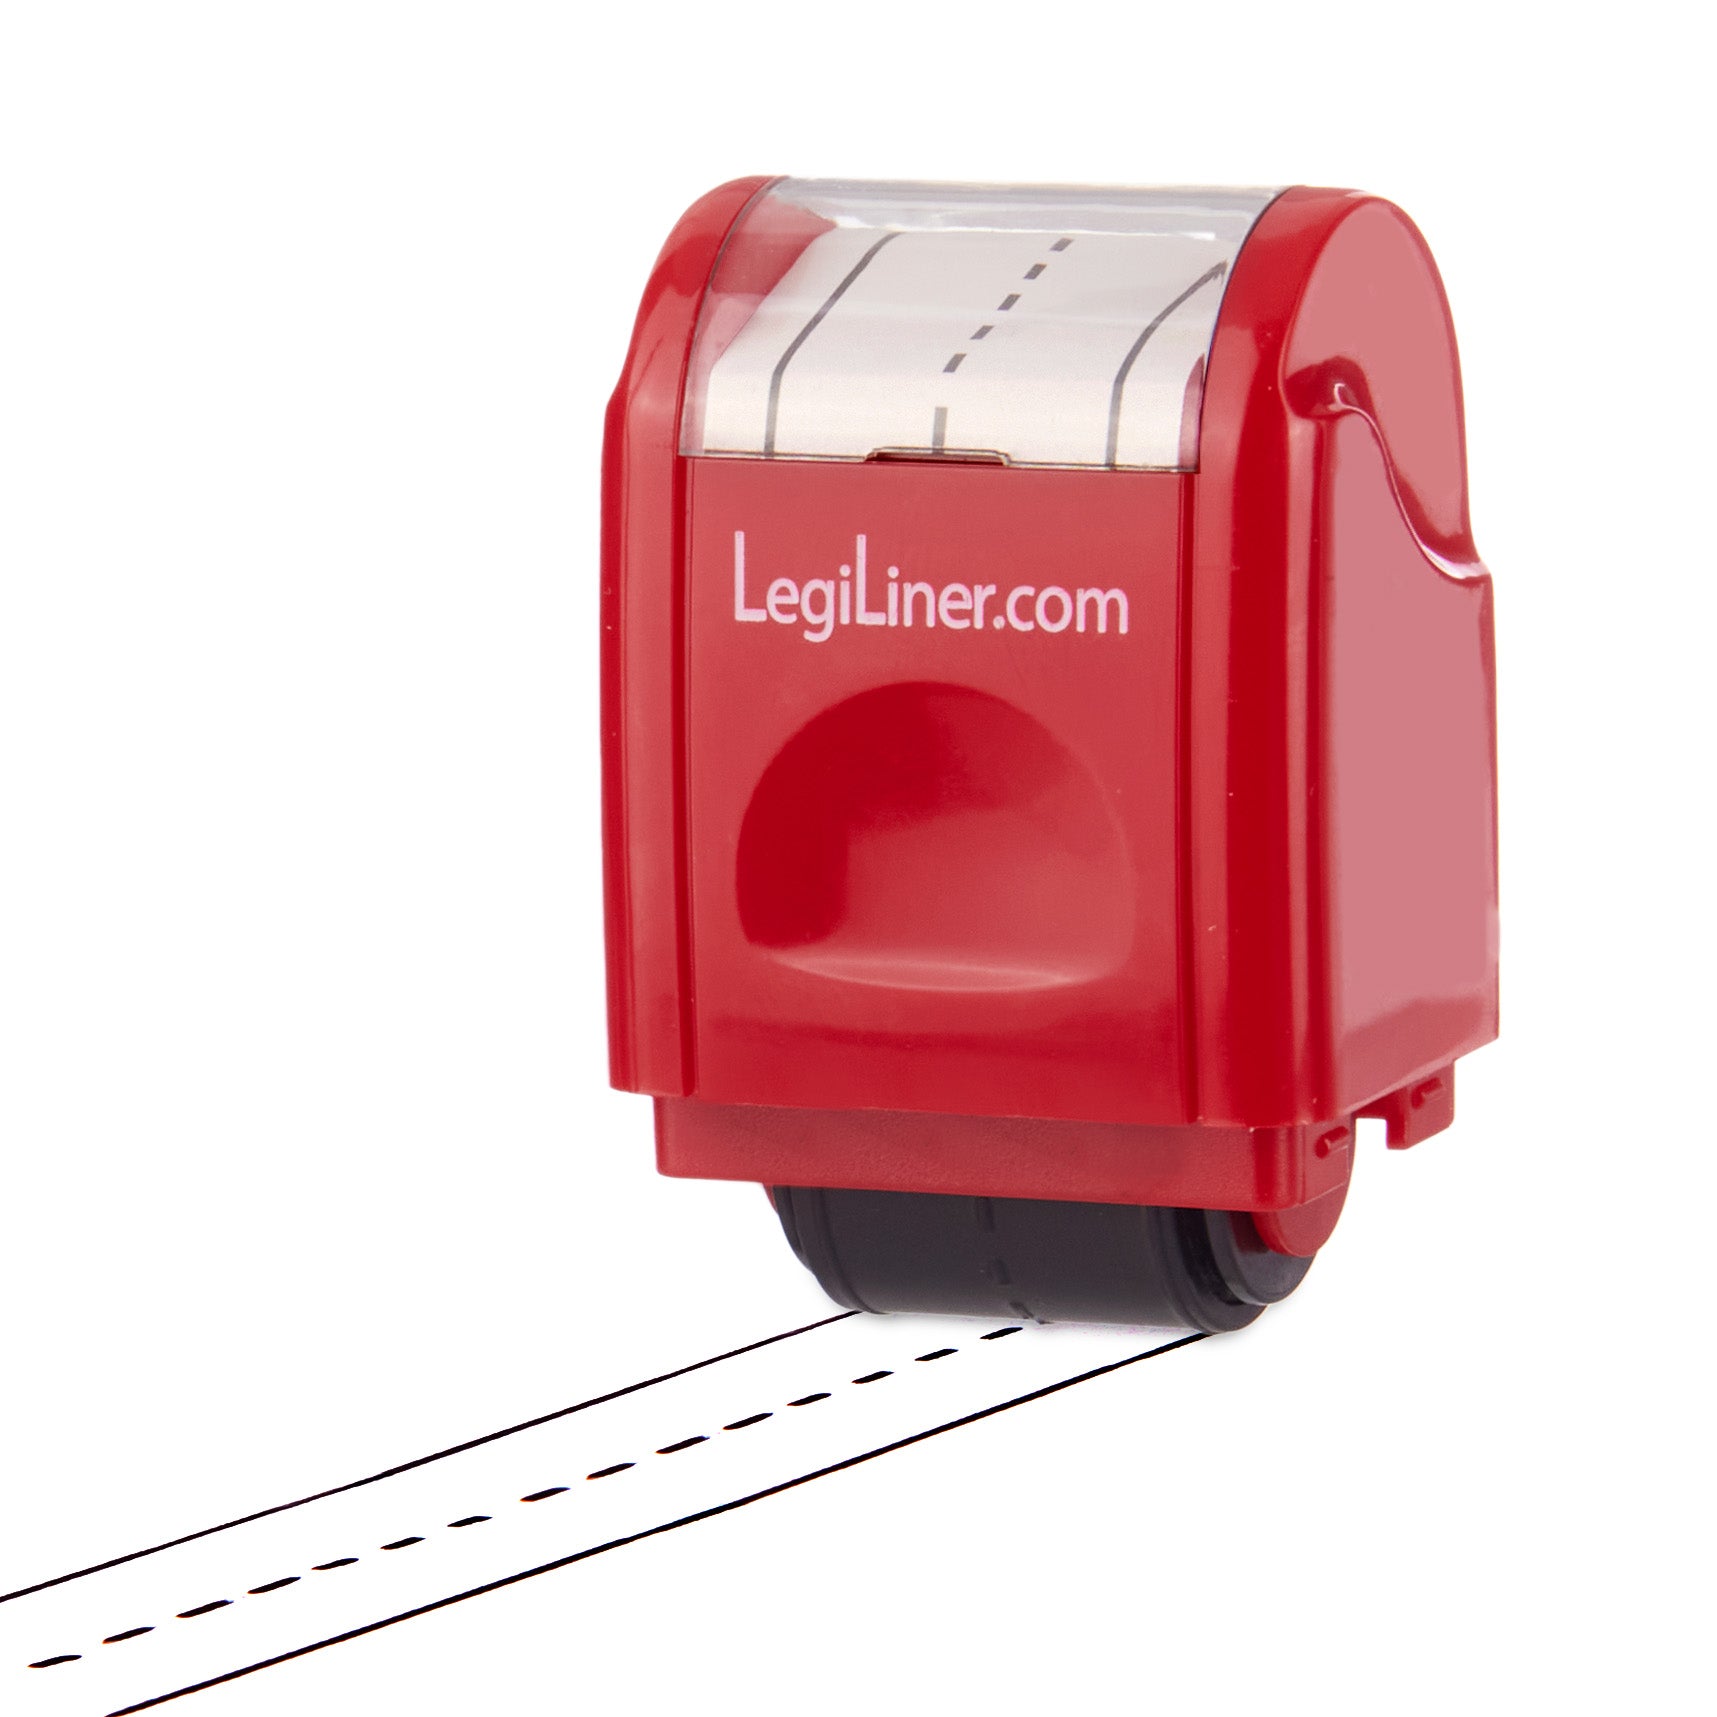 LegiLiner 1/2 inch line Rolling Ink Stamp